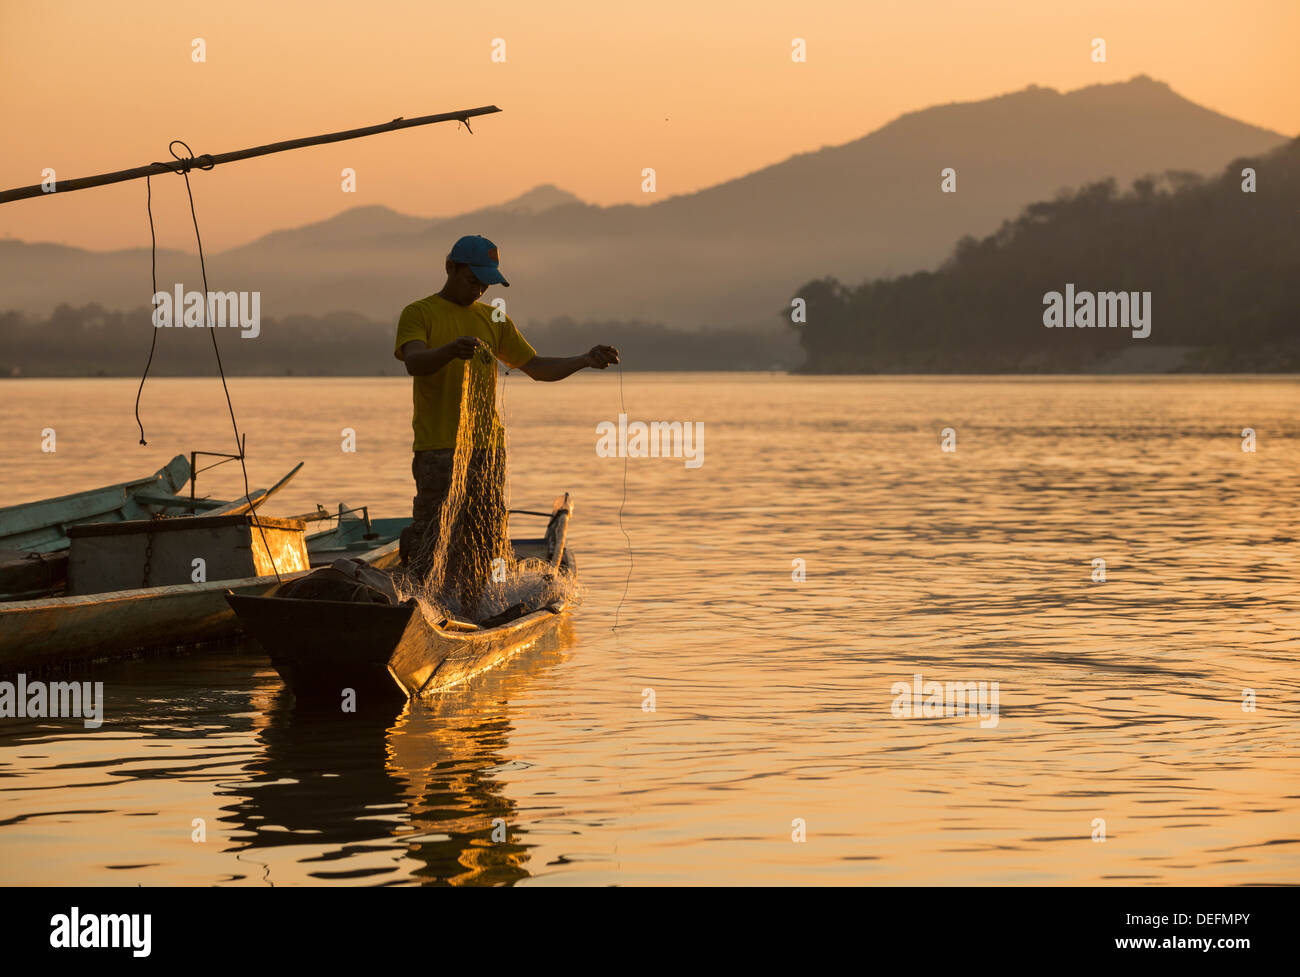 L'uomo la bobinatura in rete da pesca sul fiume Mekong, Luang Prabang, Laos, Indocina, Asia sud-orientale, Asia Foto Stock